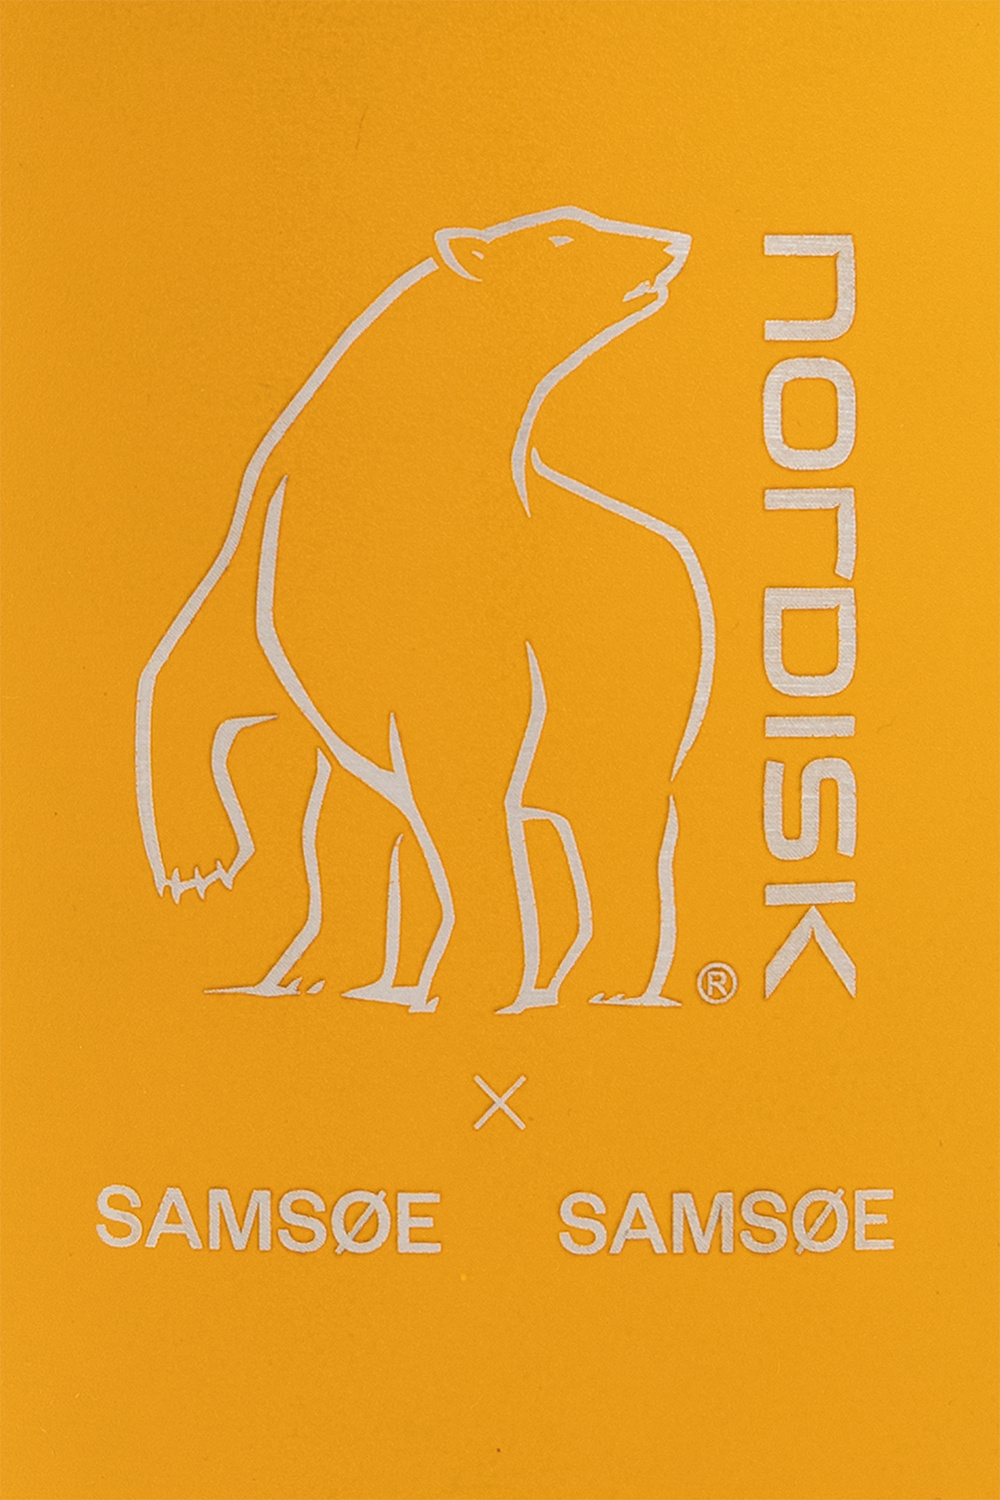 Samsøe Samsøe for the spring-summer season